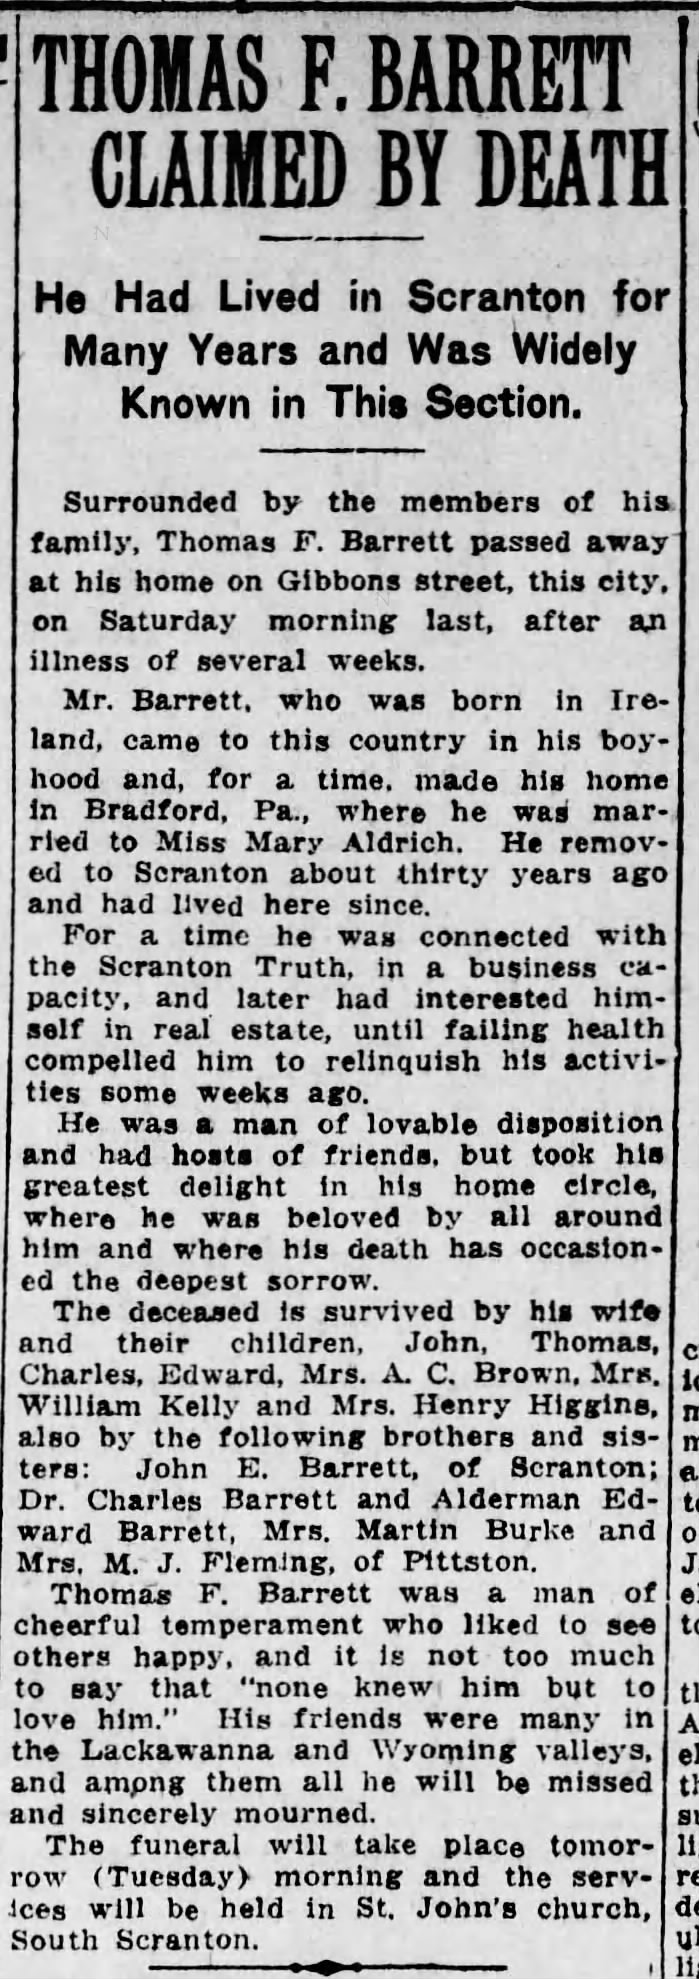 The Scranton Republican 10 April 1916 Thomas F. Barrett obituary